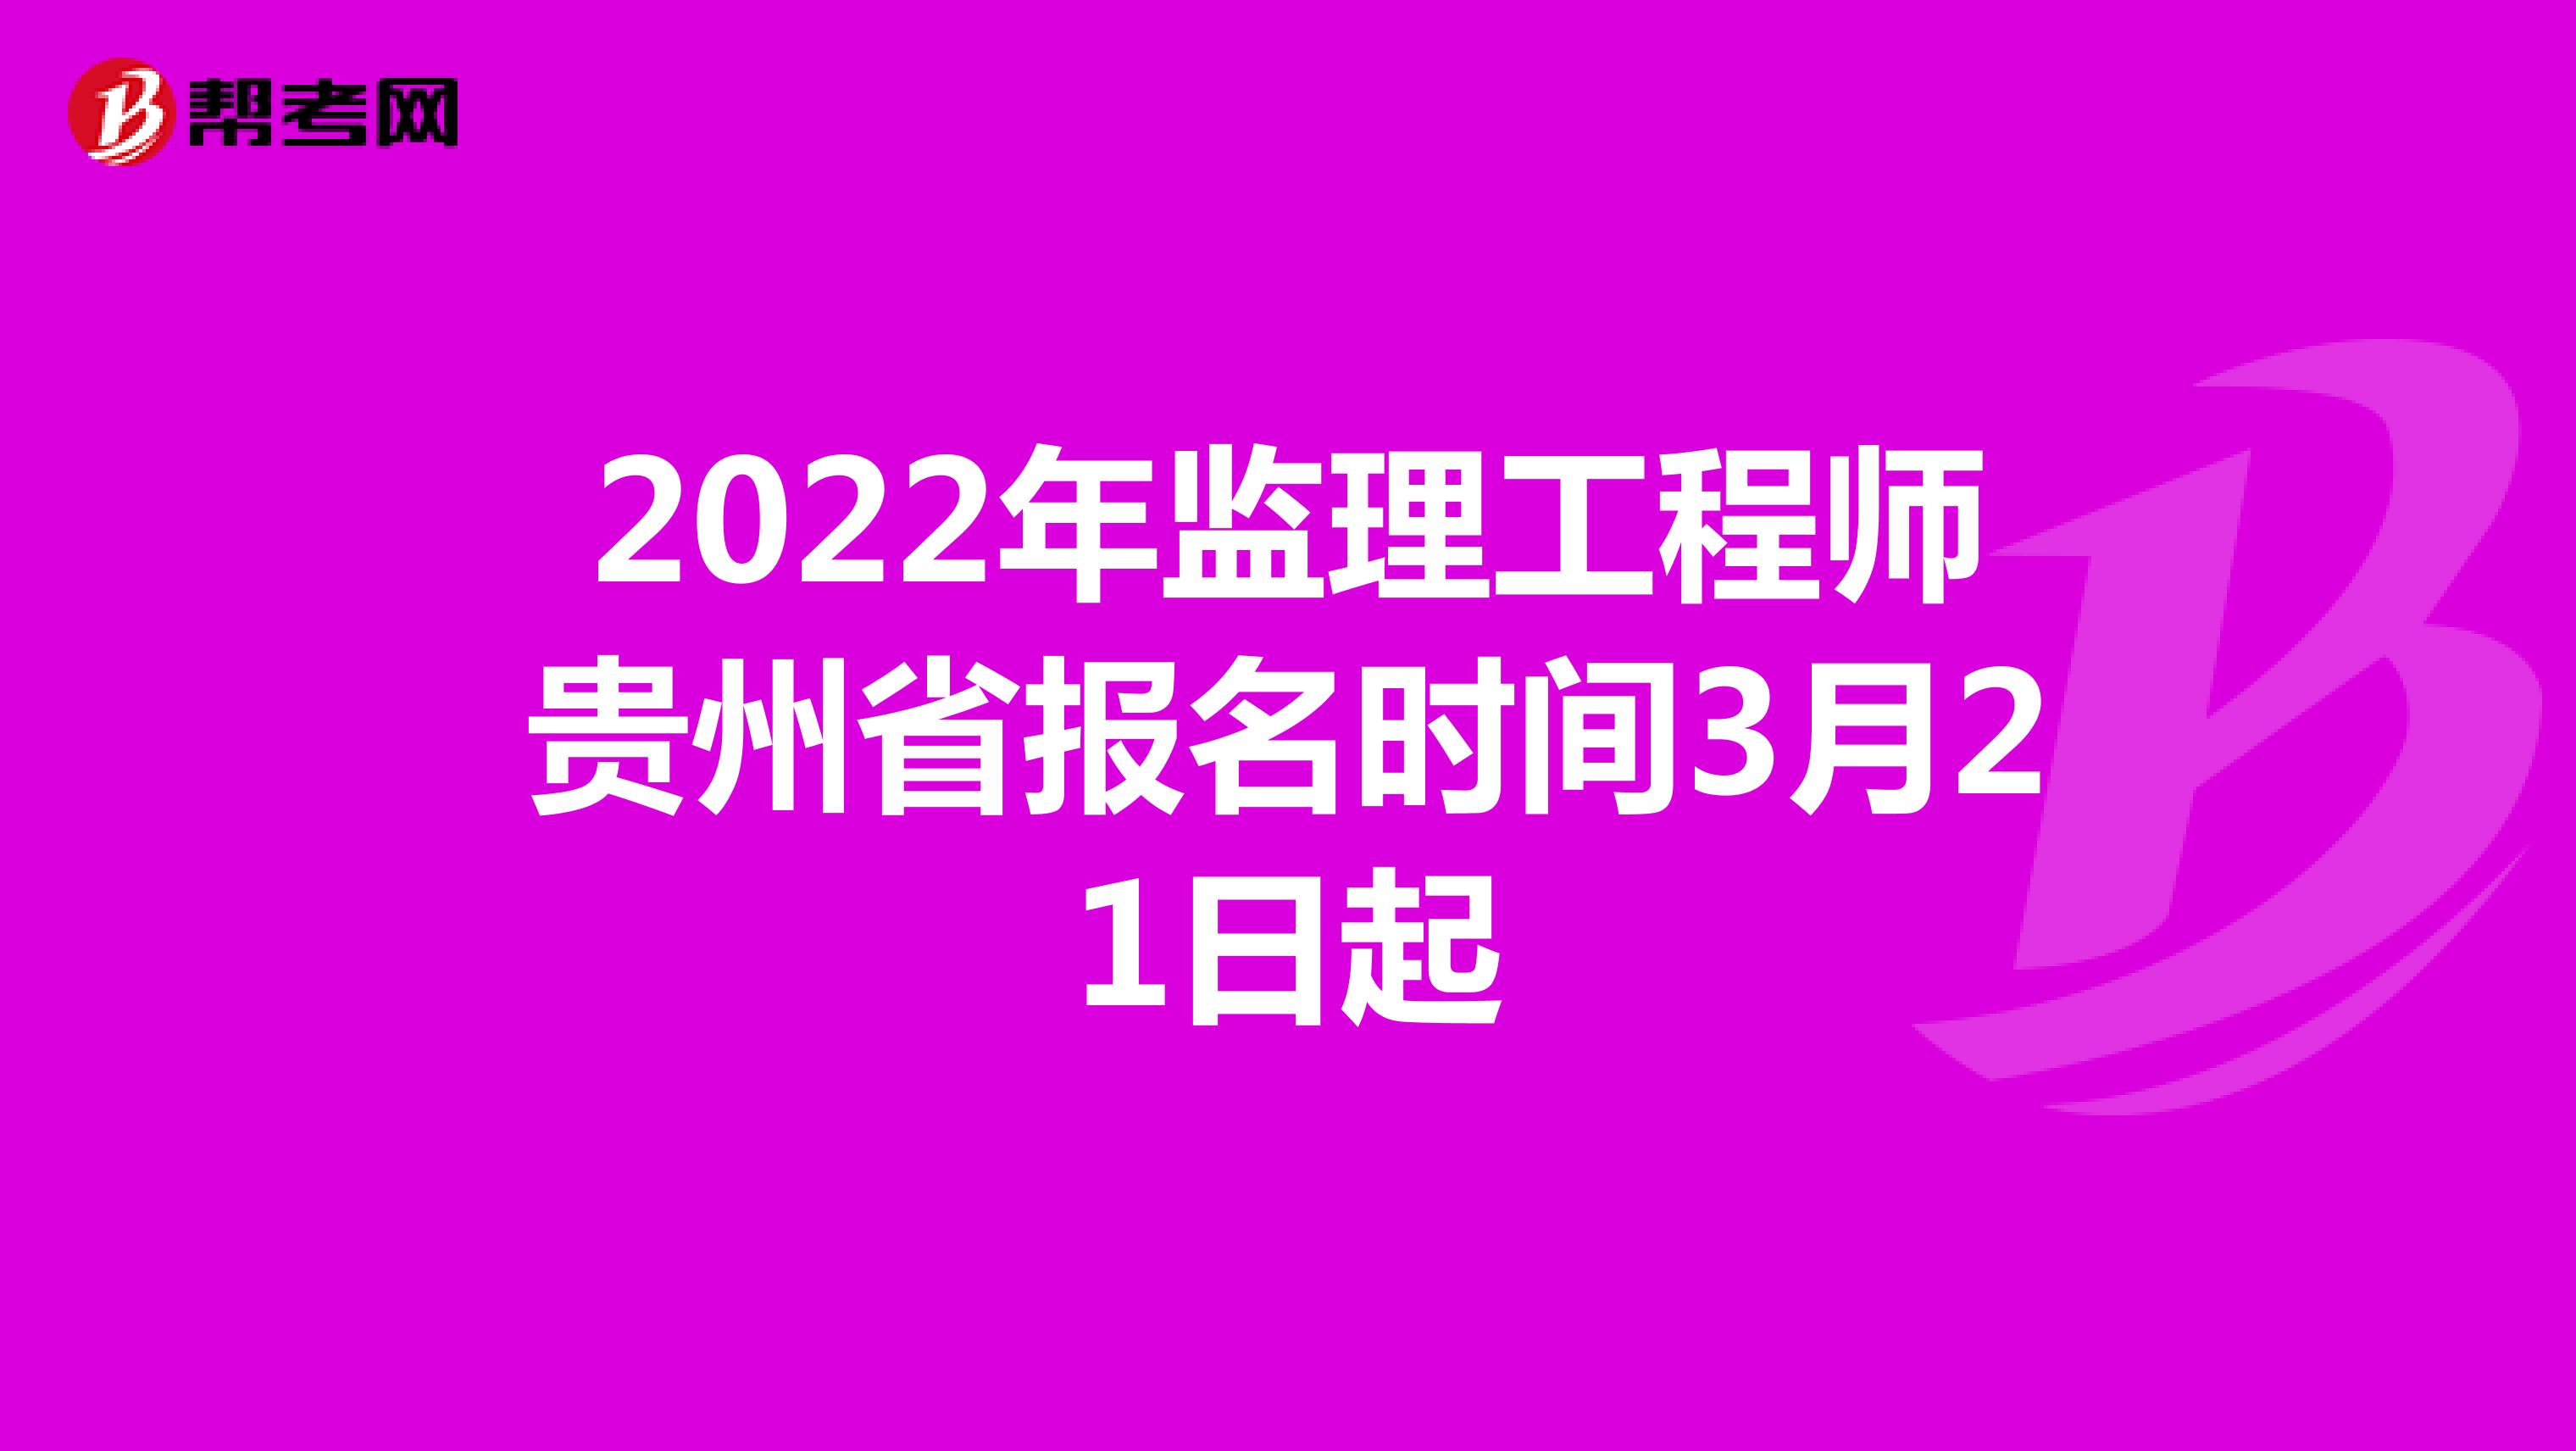 2022年監理工程師貴州省報名時間3月21日起